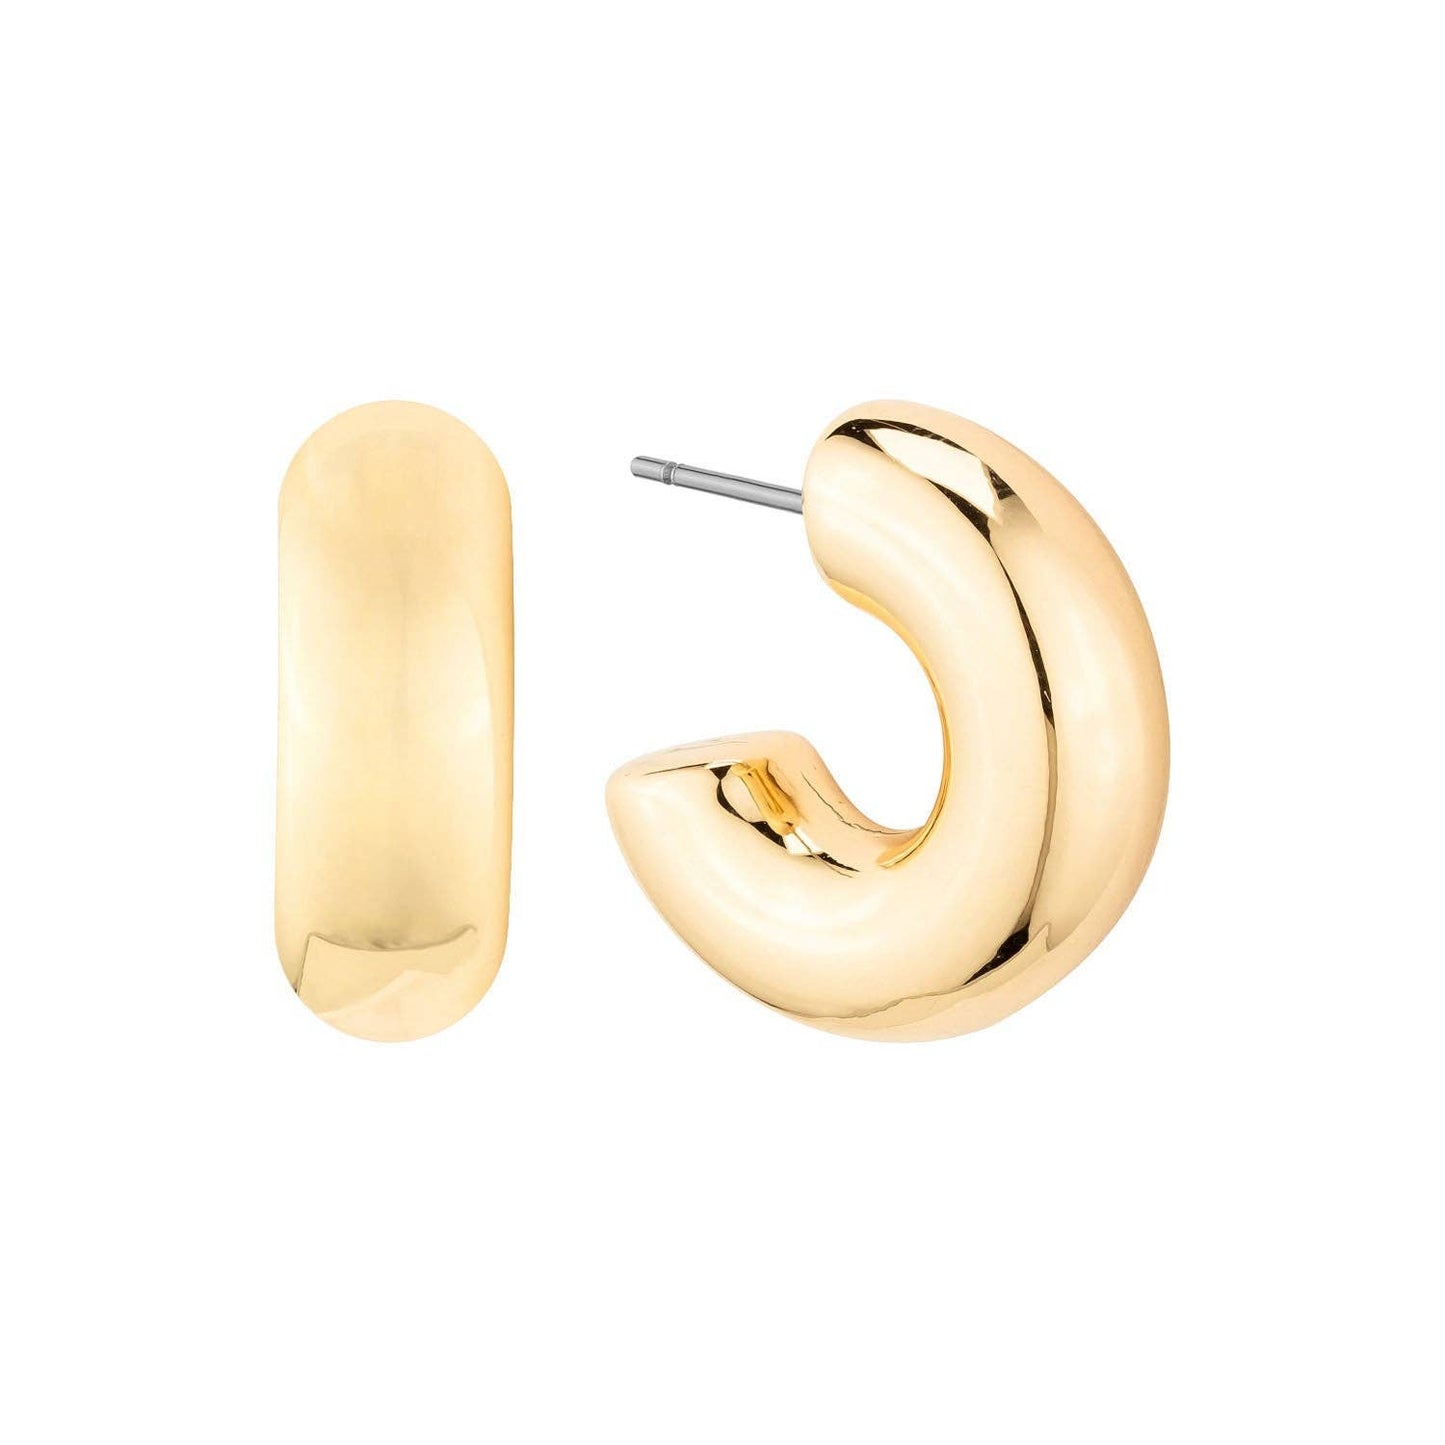 Emmett Earrings in Gold